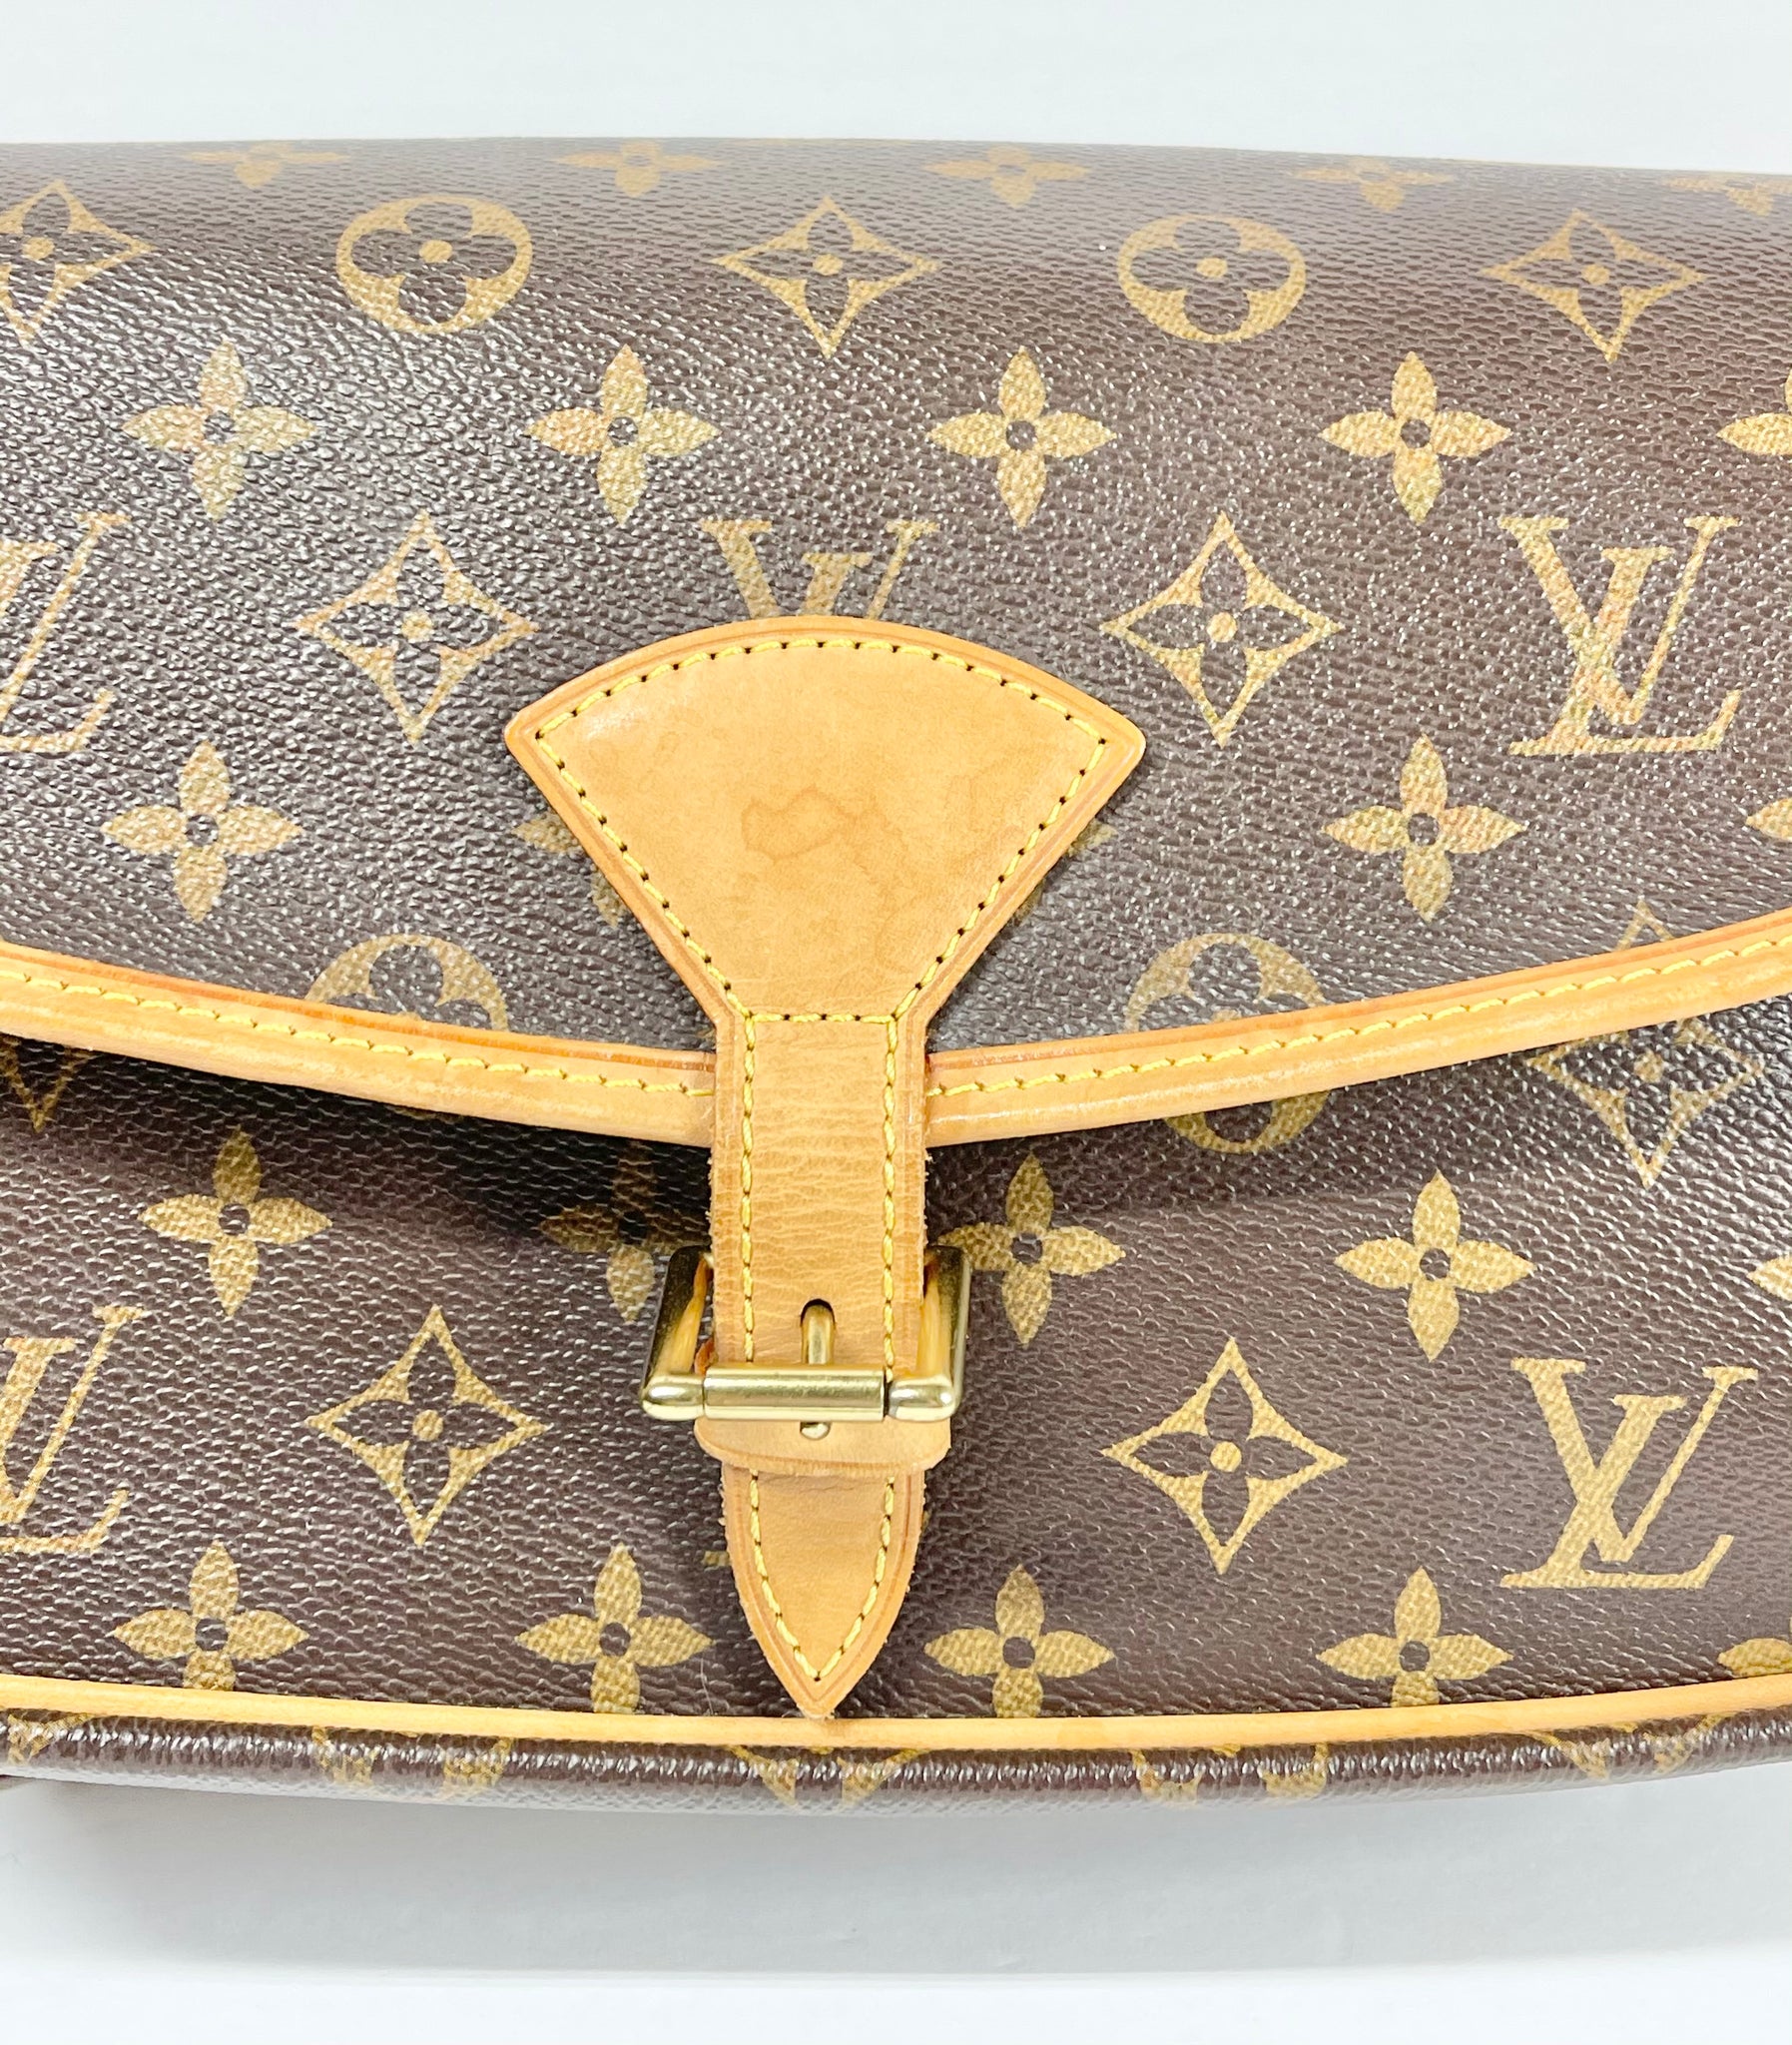 AUTHENTIC Louis Vuitton Sologne Monogram Crossbody PREOWNED (WBA344) – Jj's  Closet, LLC